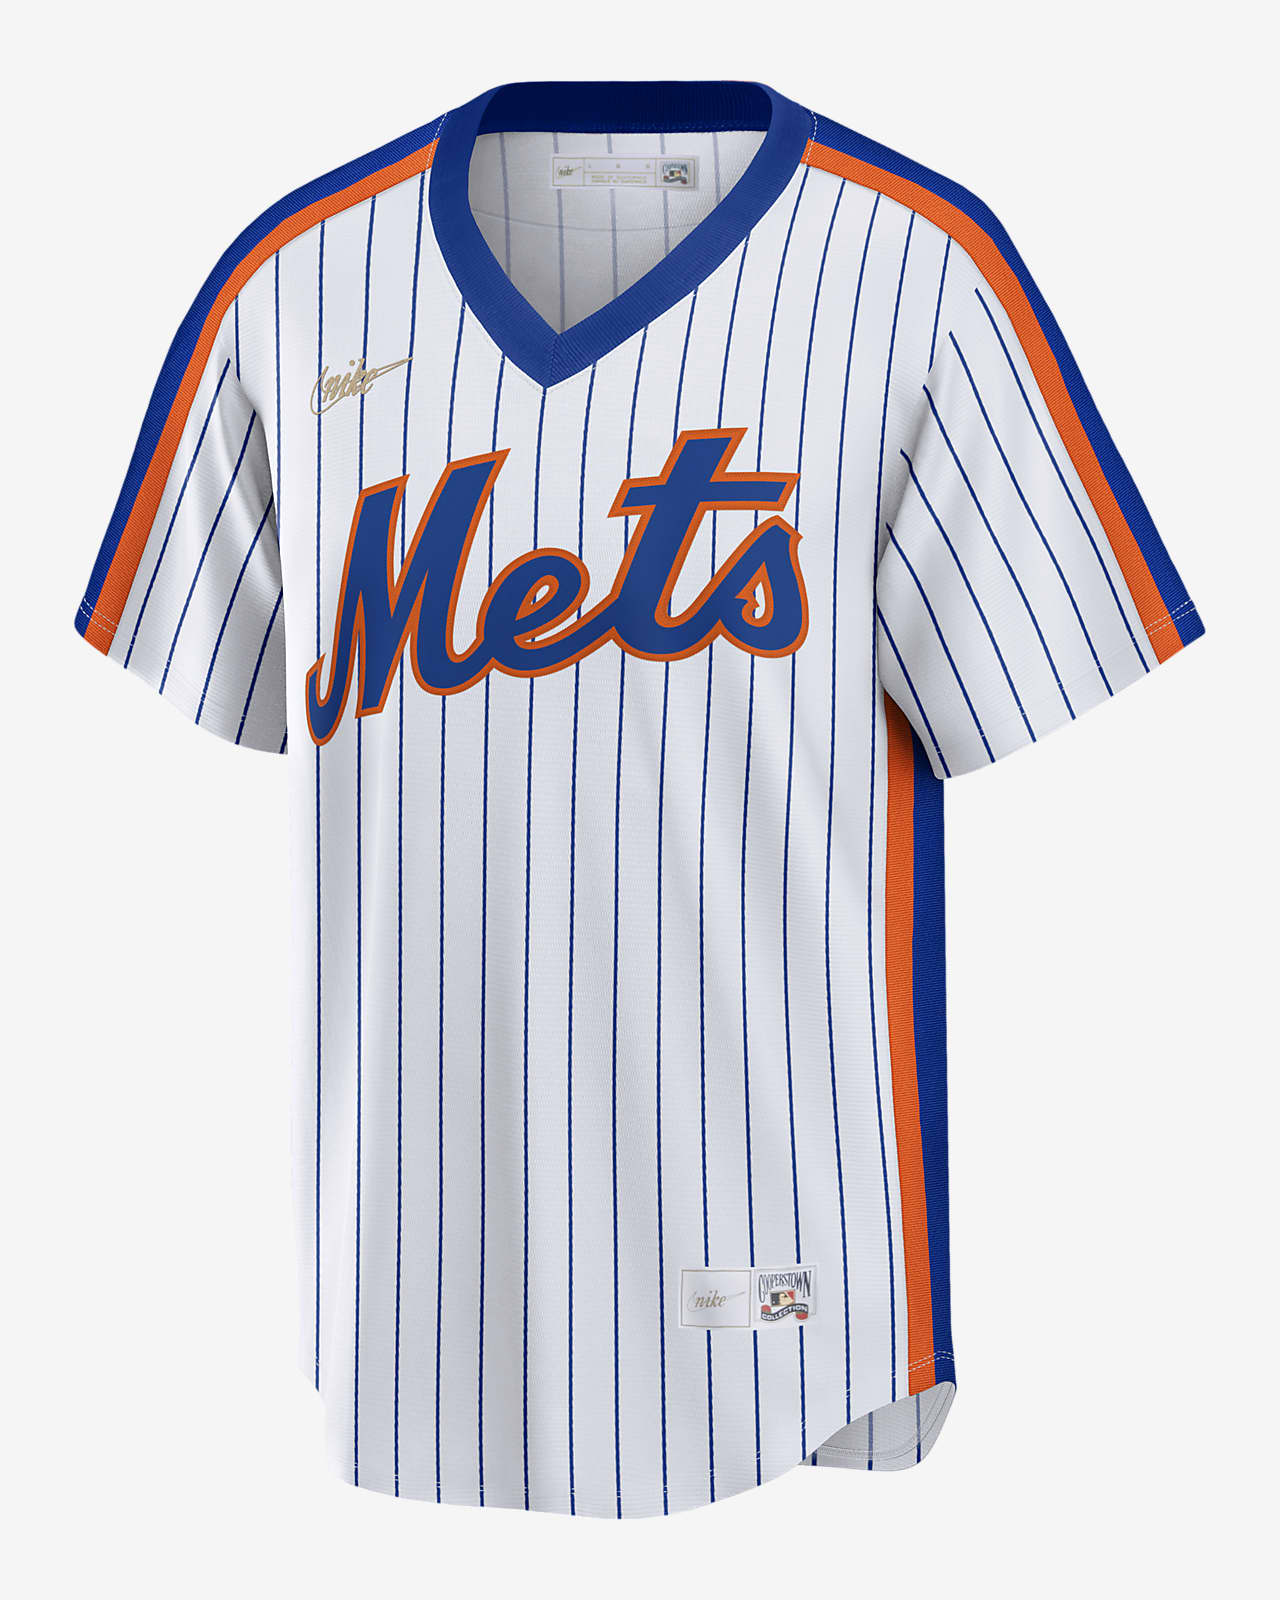 MLB New York Mets (Tom Seaver) Men's Cooperstown Baseball Jersey